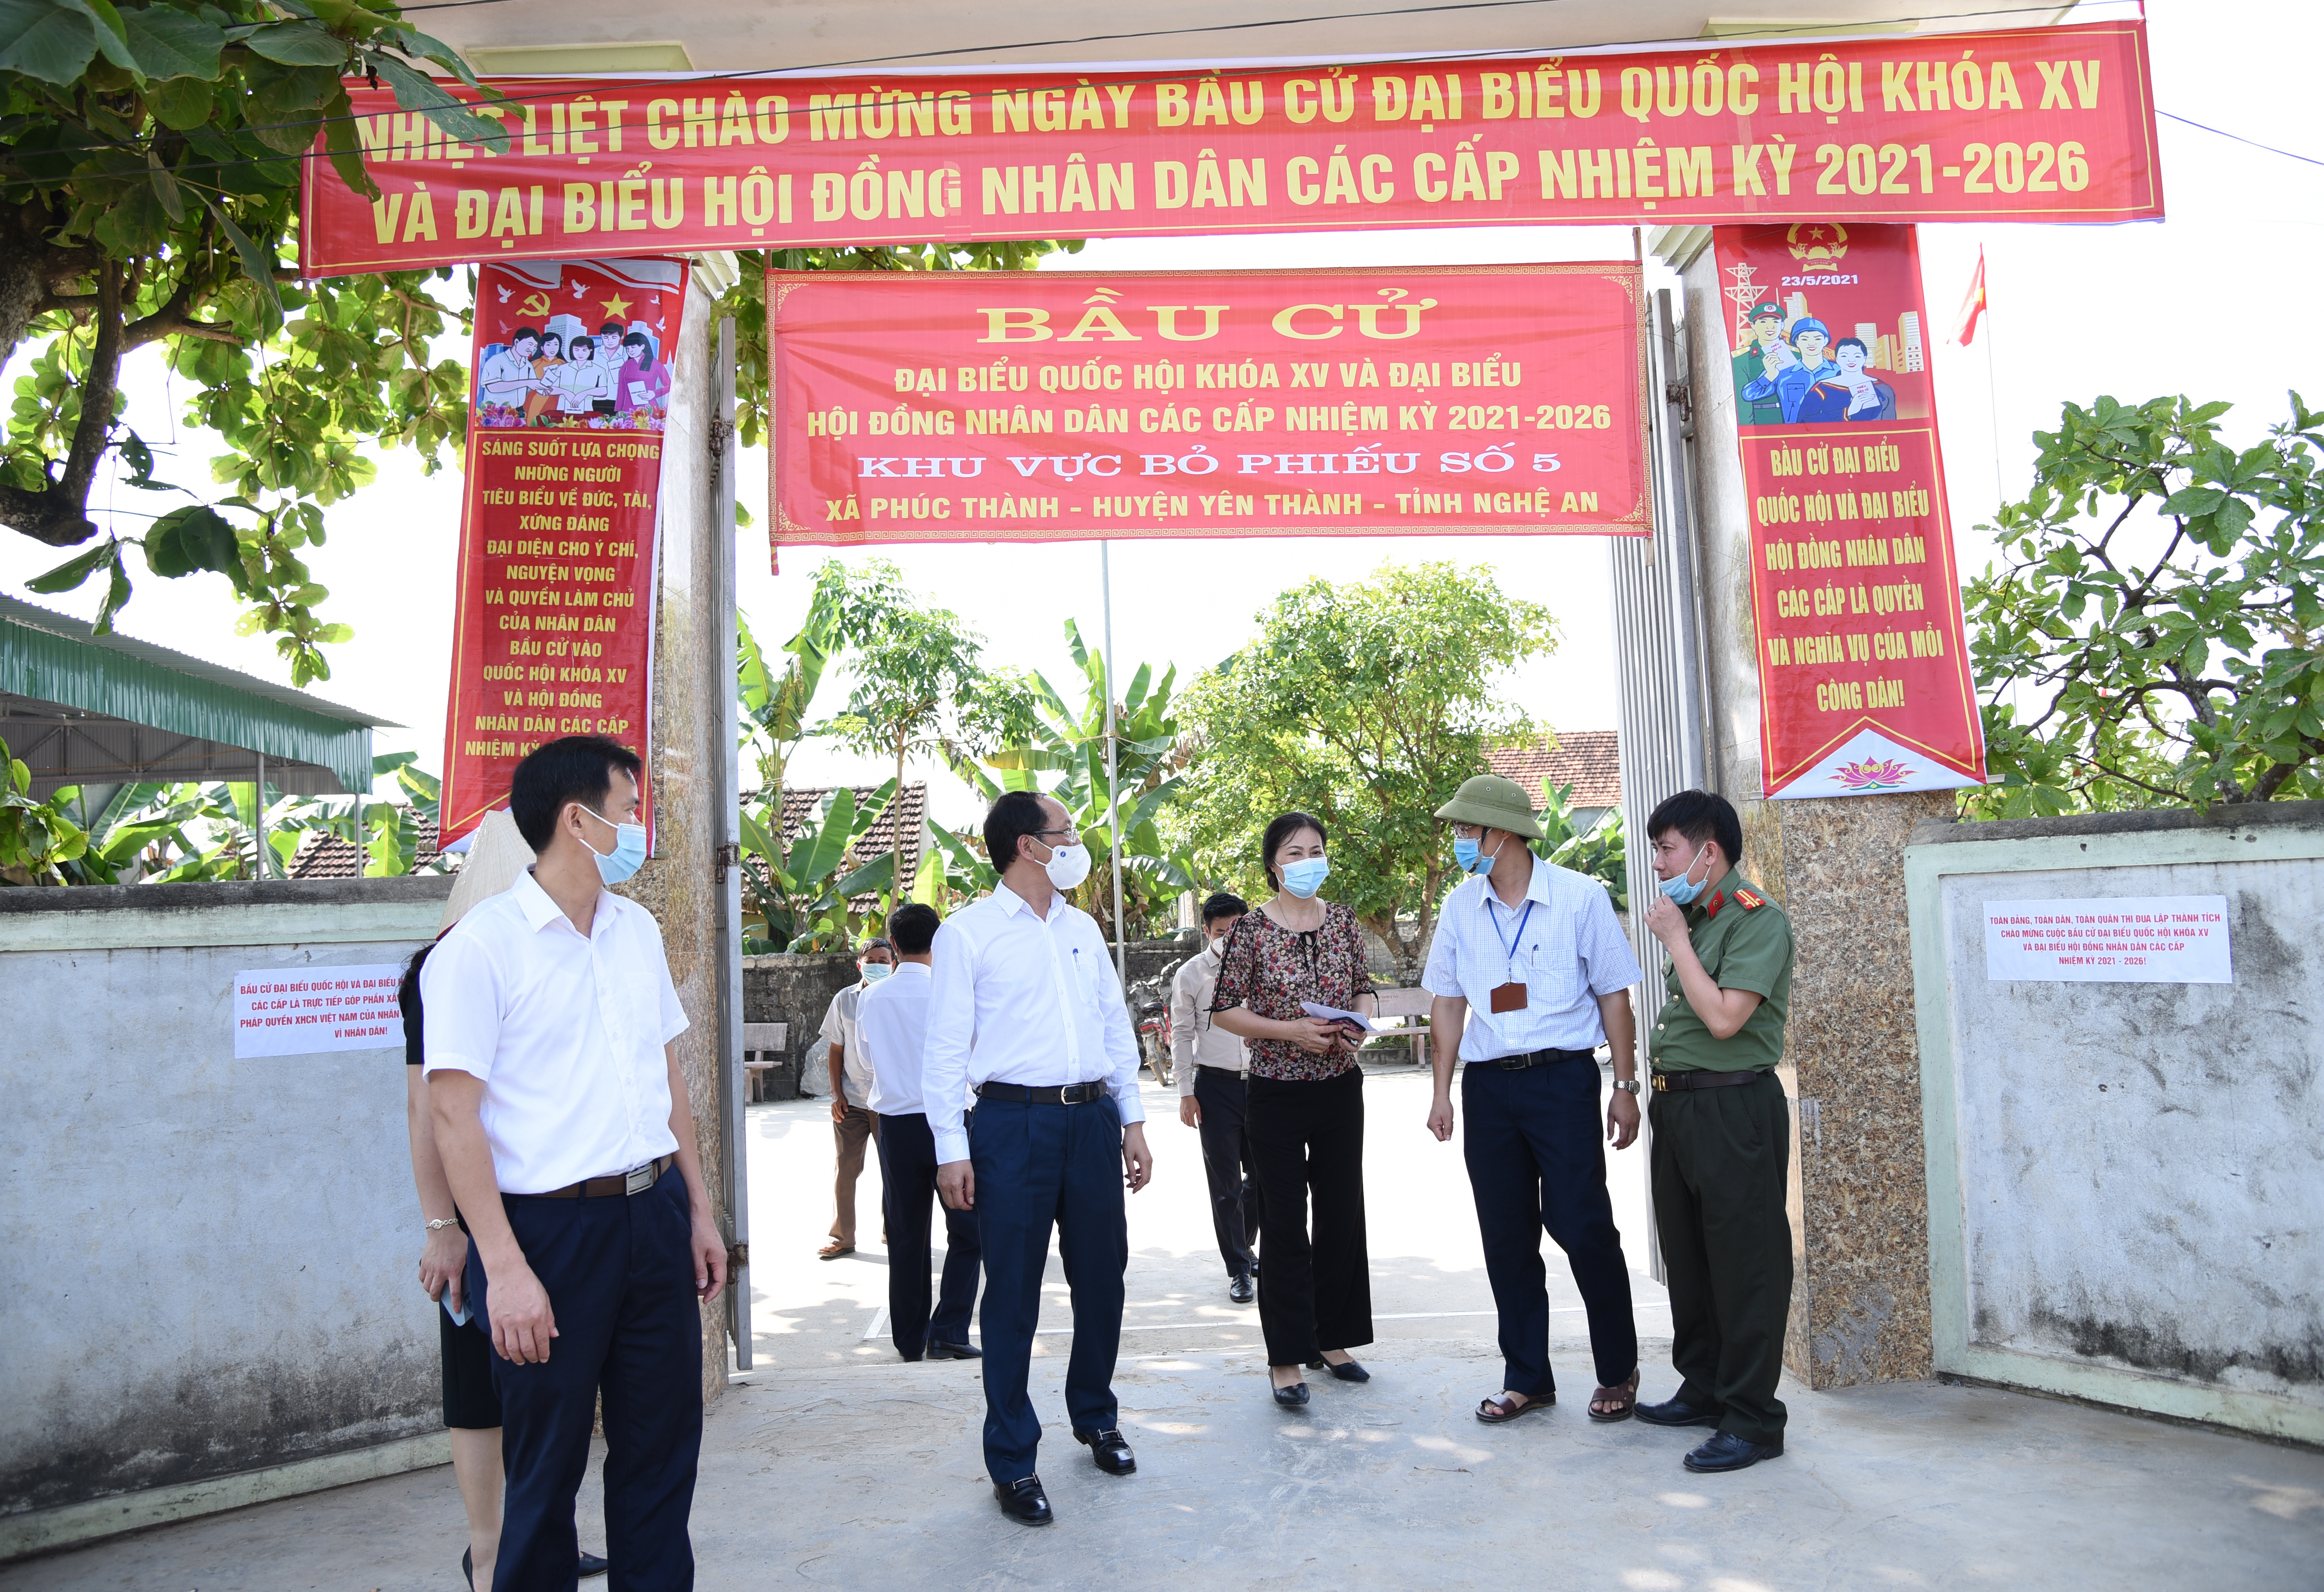 Các thành viên trong đoàn kiểm tra bầu cử của tỉnh kiểm tra nội dung trang trí tại khu vực bầu cử của xã Phúc Thành, huyện Yên Thành. Ảnh: TG